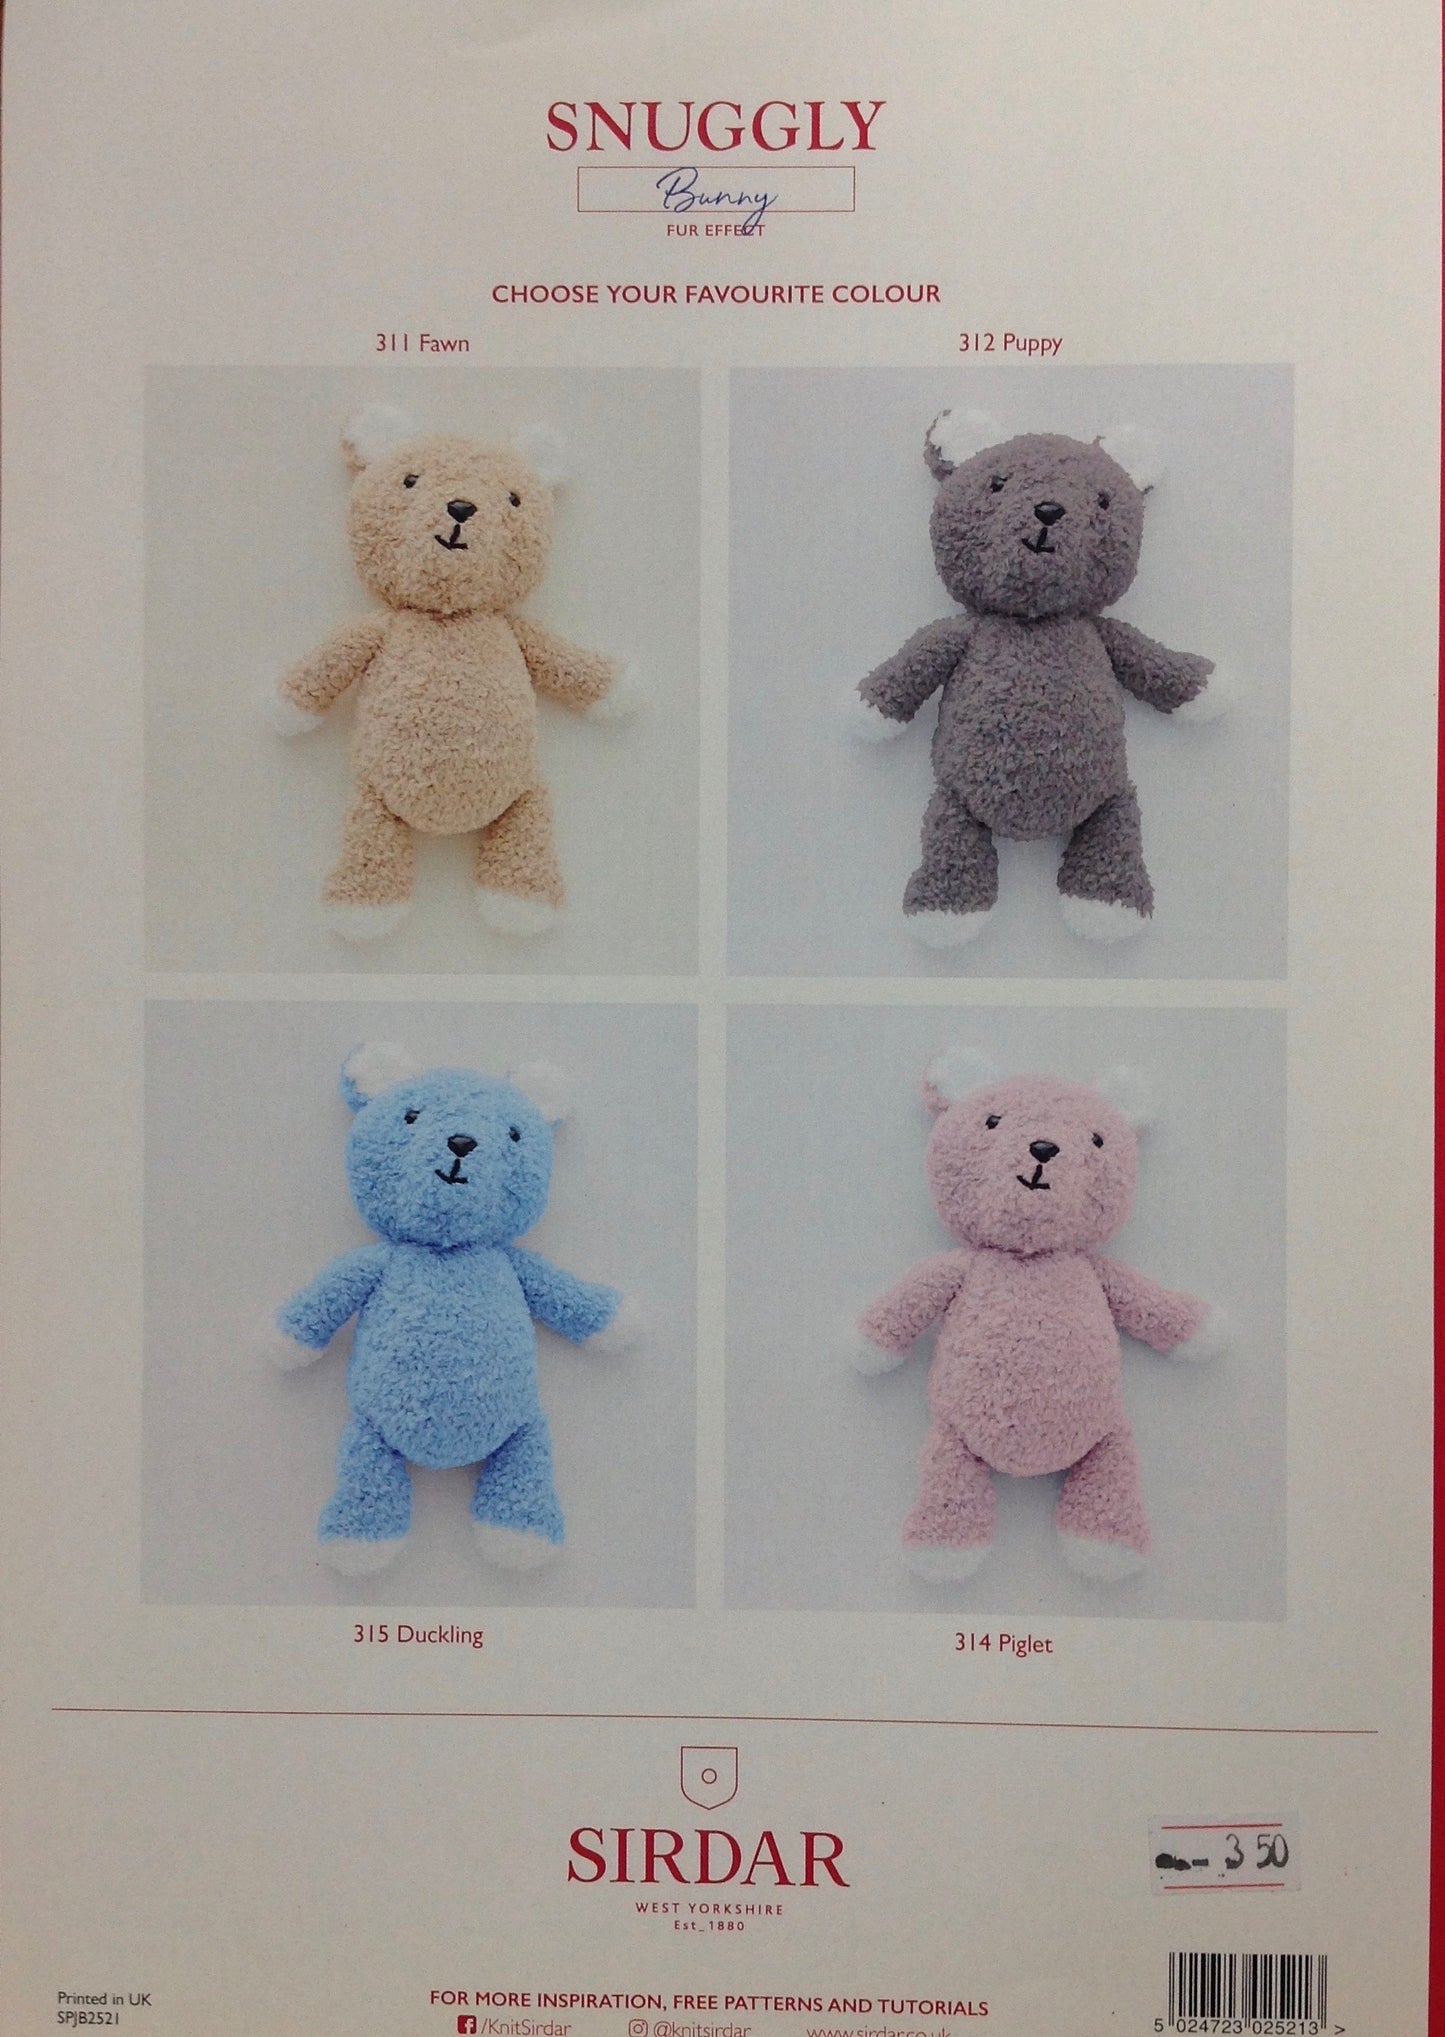 2521 Sirdar Snuggly Bunny Fur effect Teddy Bear and Bunny Toy knitting pattern